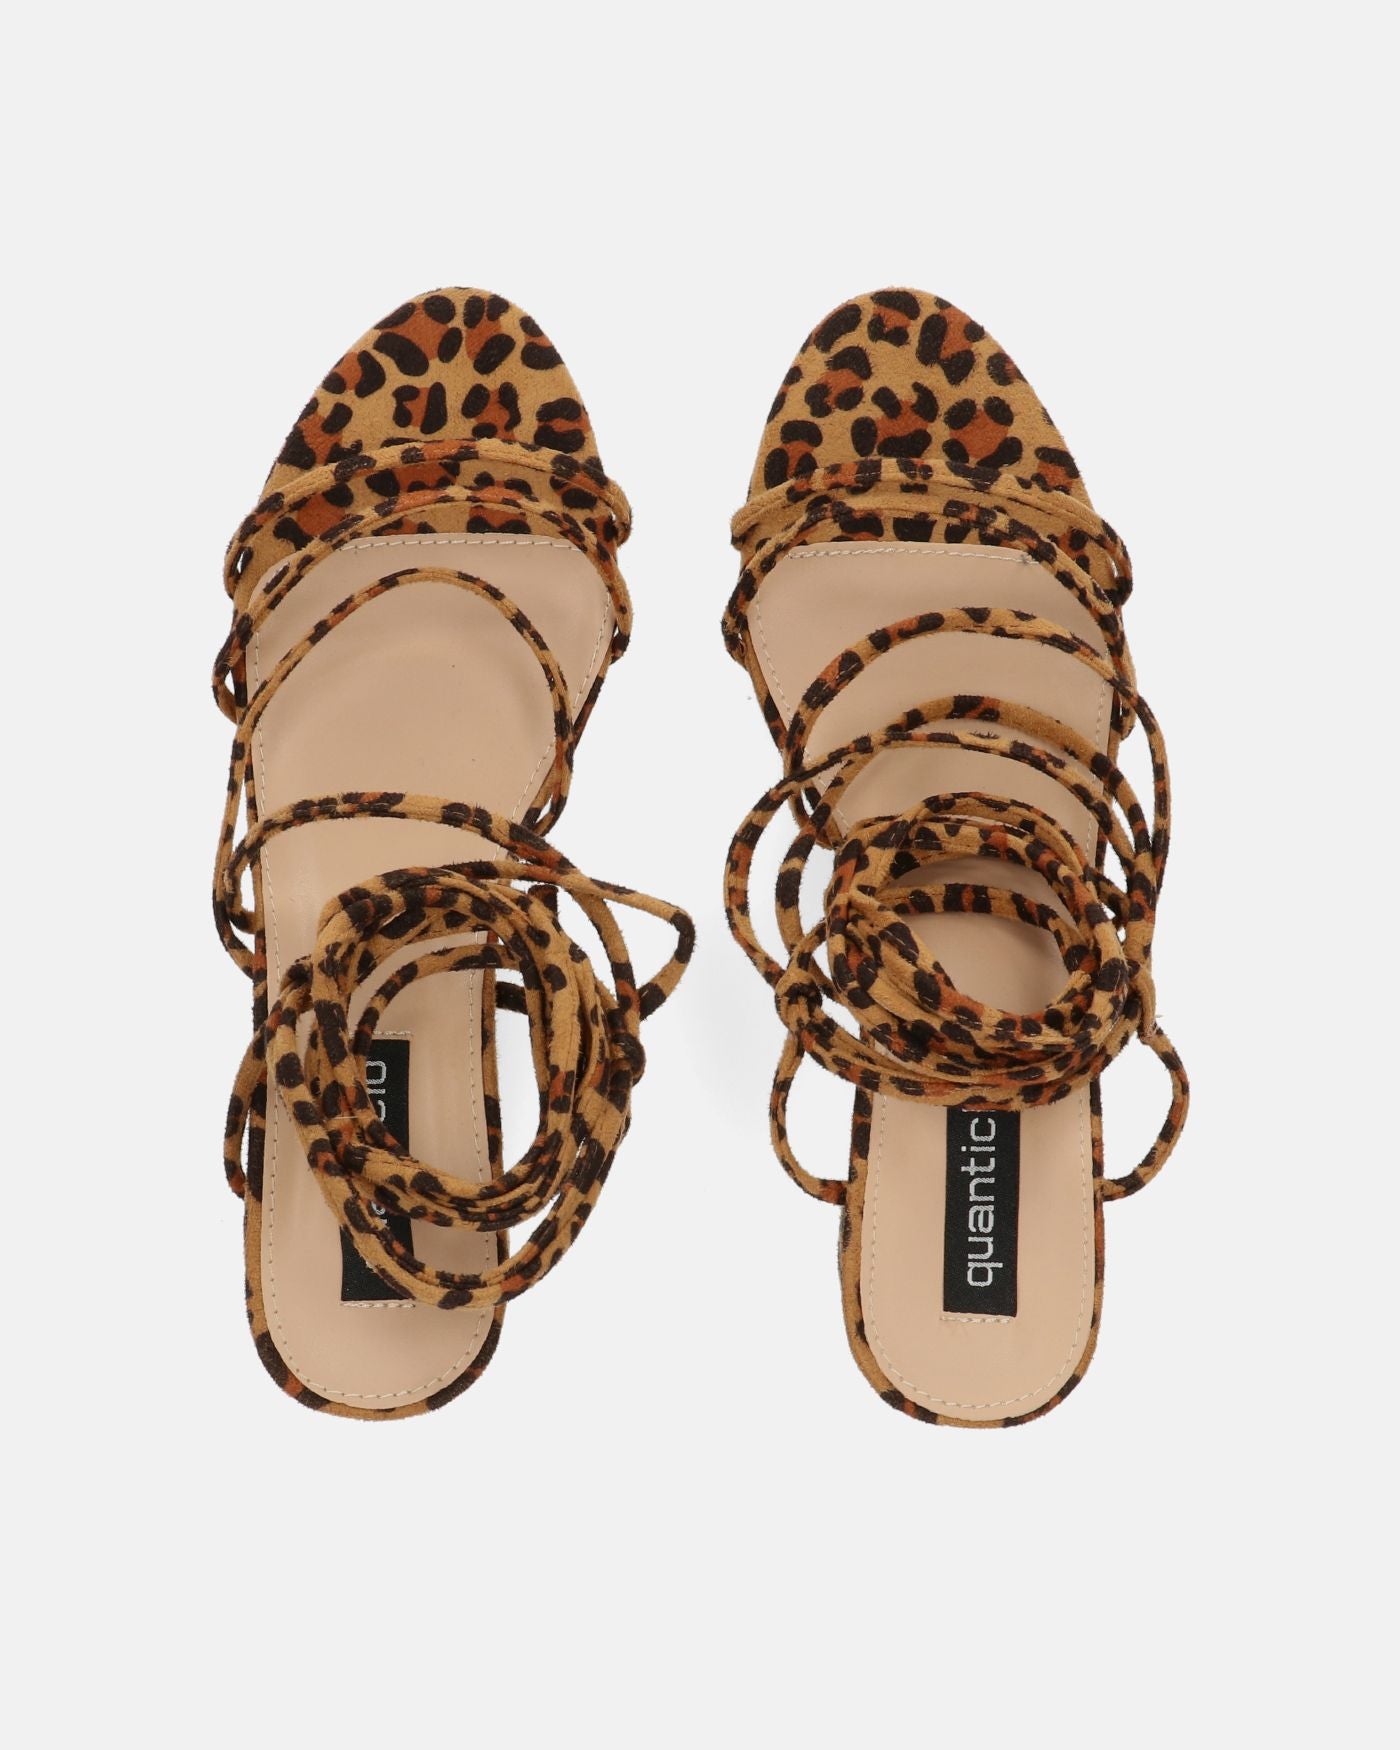 TALIA - heeled sandal in leopard suede